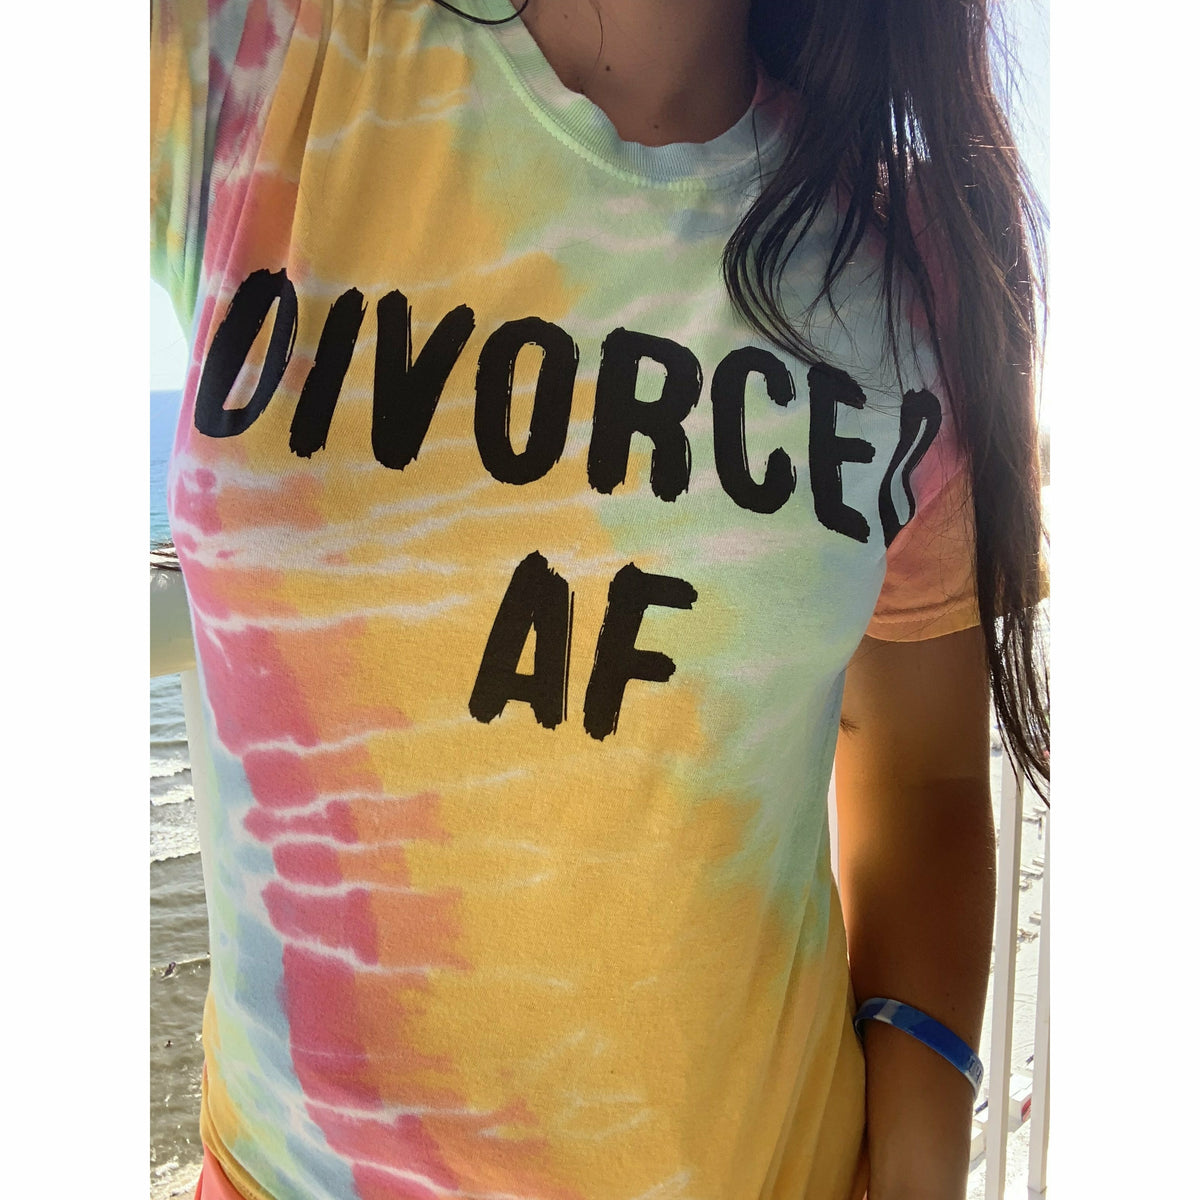 Divorced AF tee